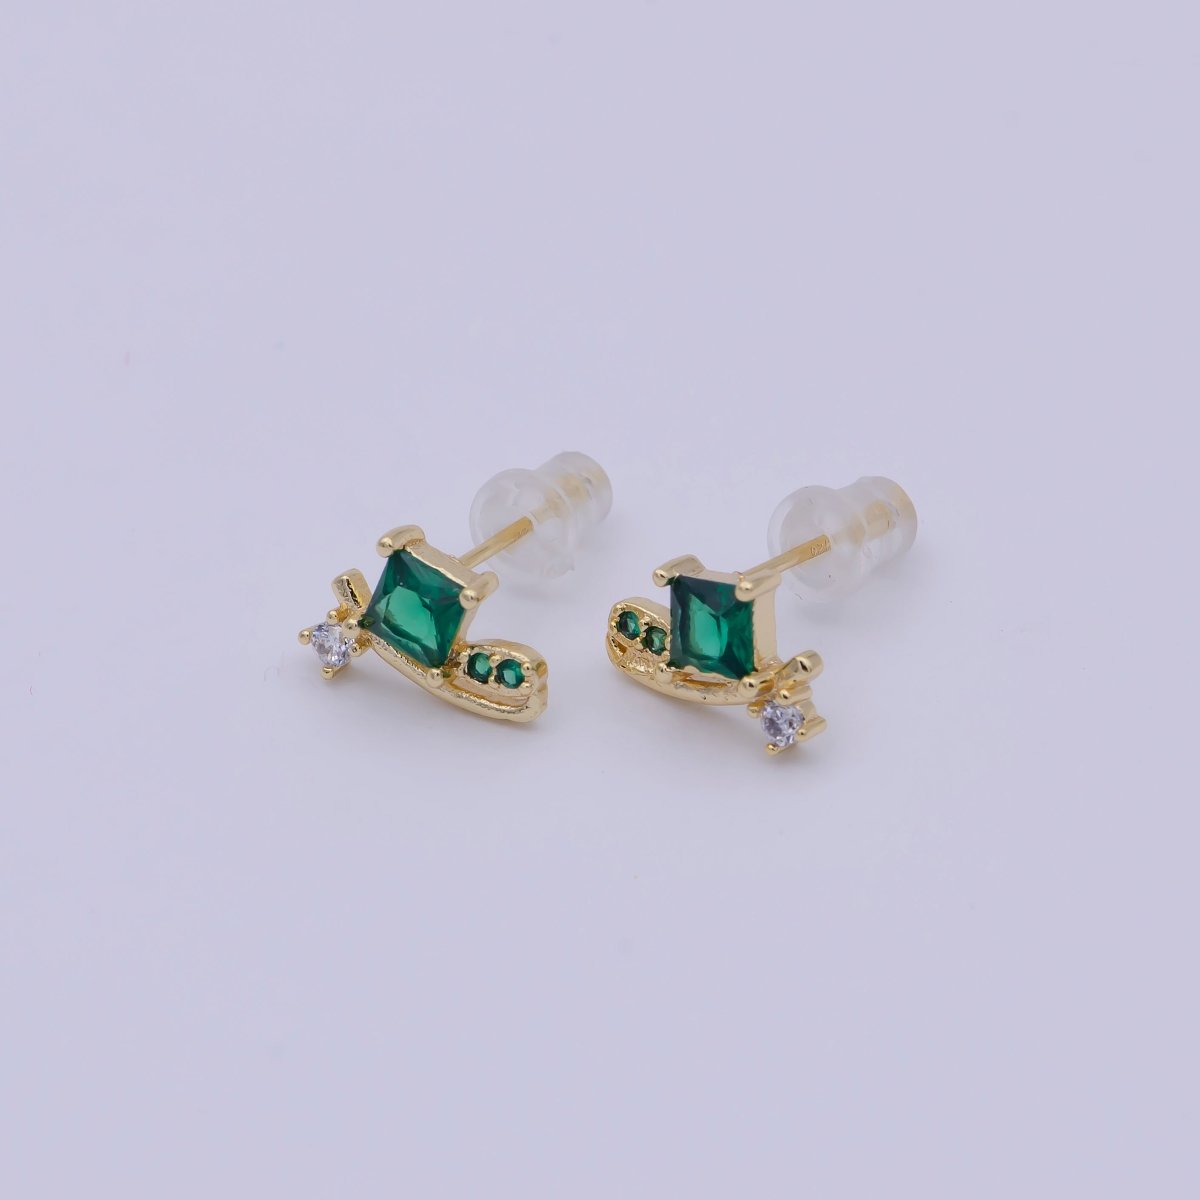 Mini Snail Stud Earring with Green CZ Stone Q-163 - DLUXCA